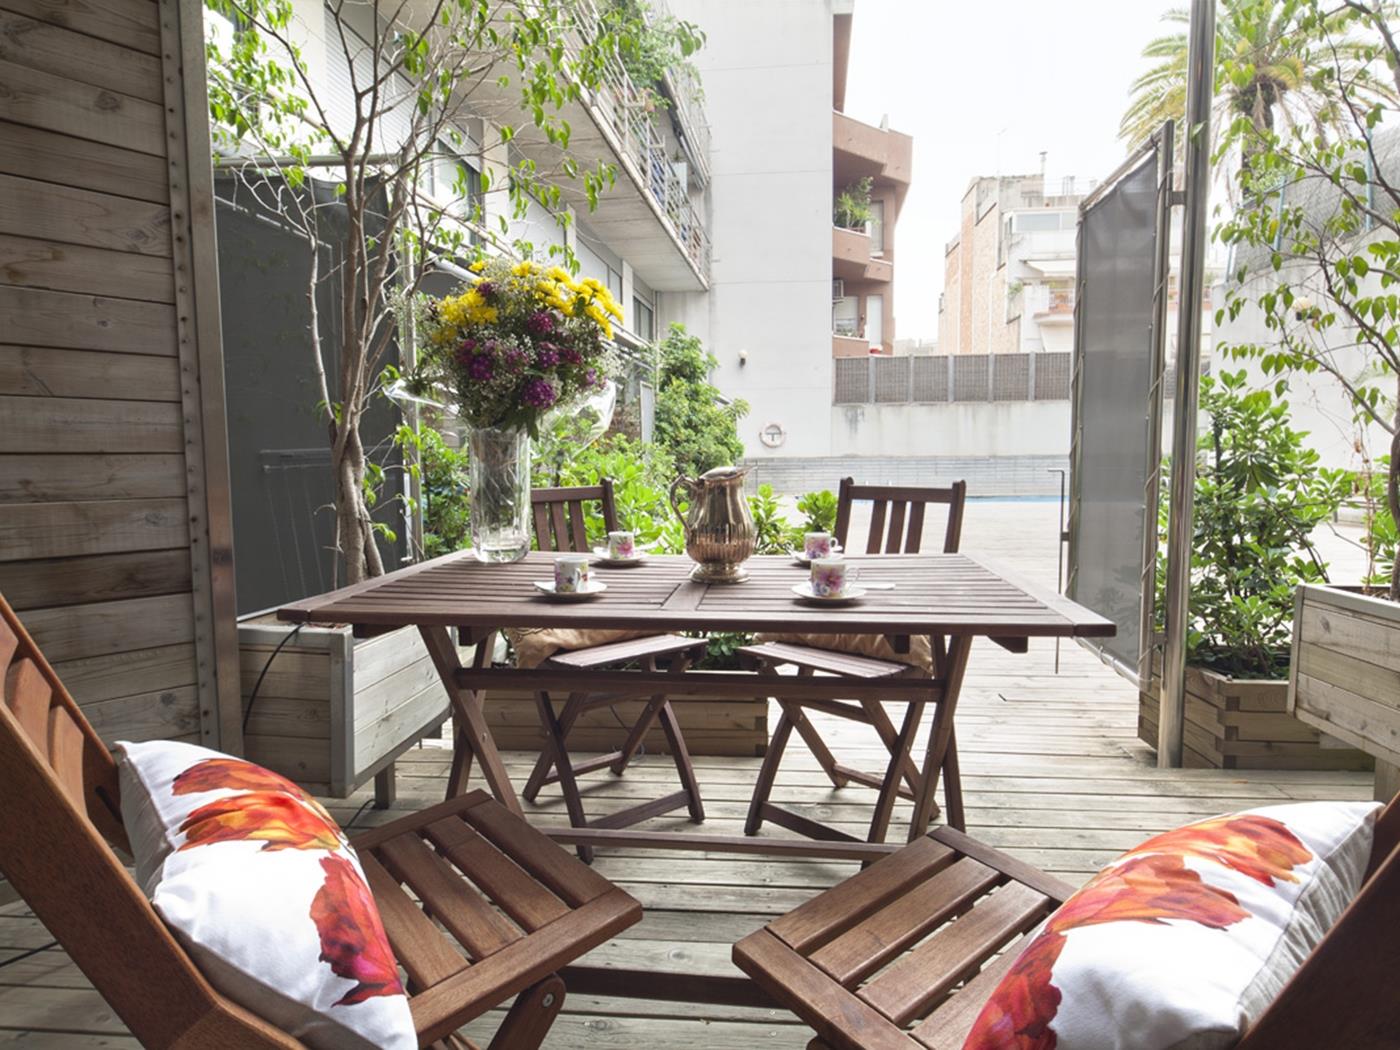 دوبلكس بالقرب من حديقة غويل مع حمام سباحة - My Space Barcelona شقة